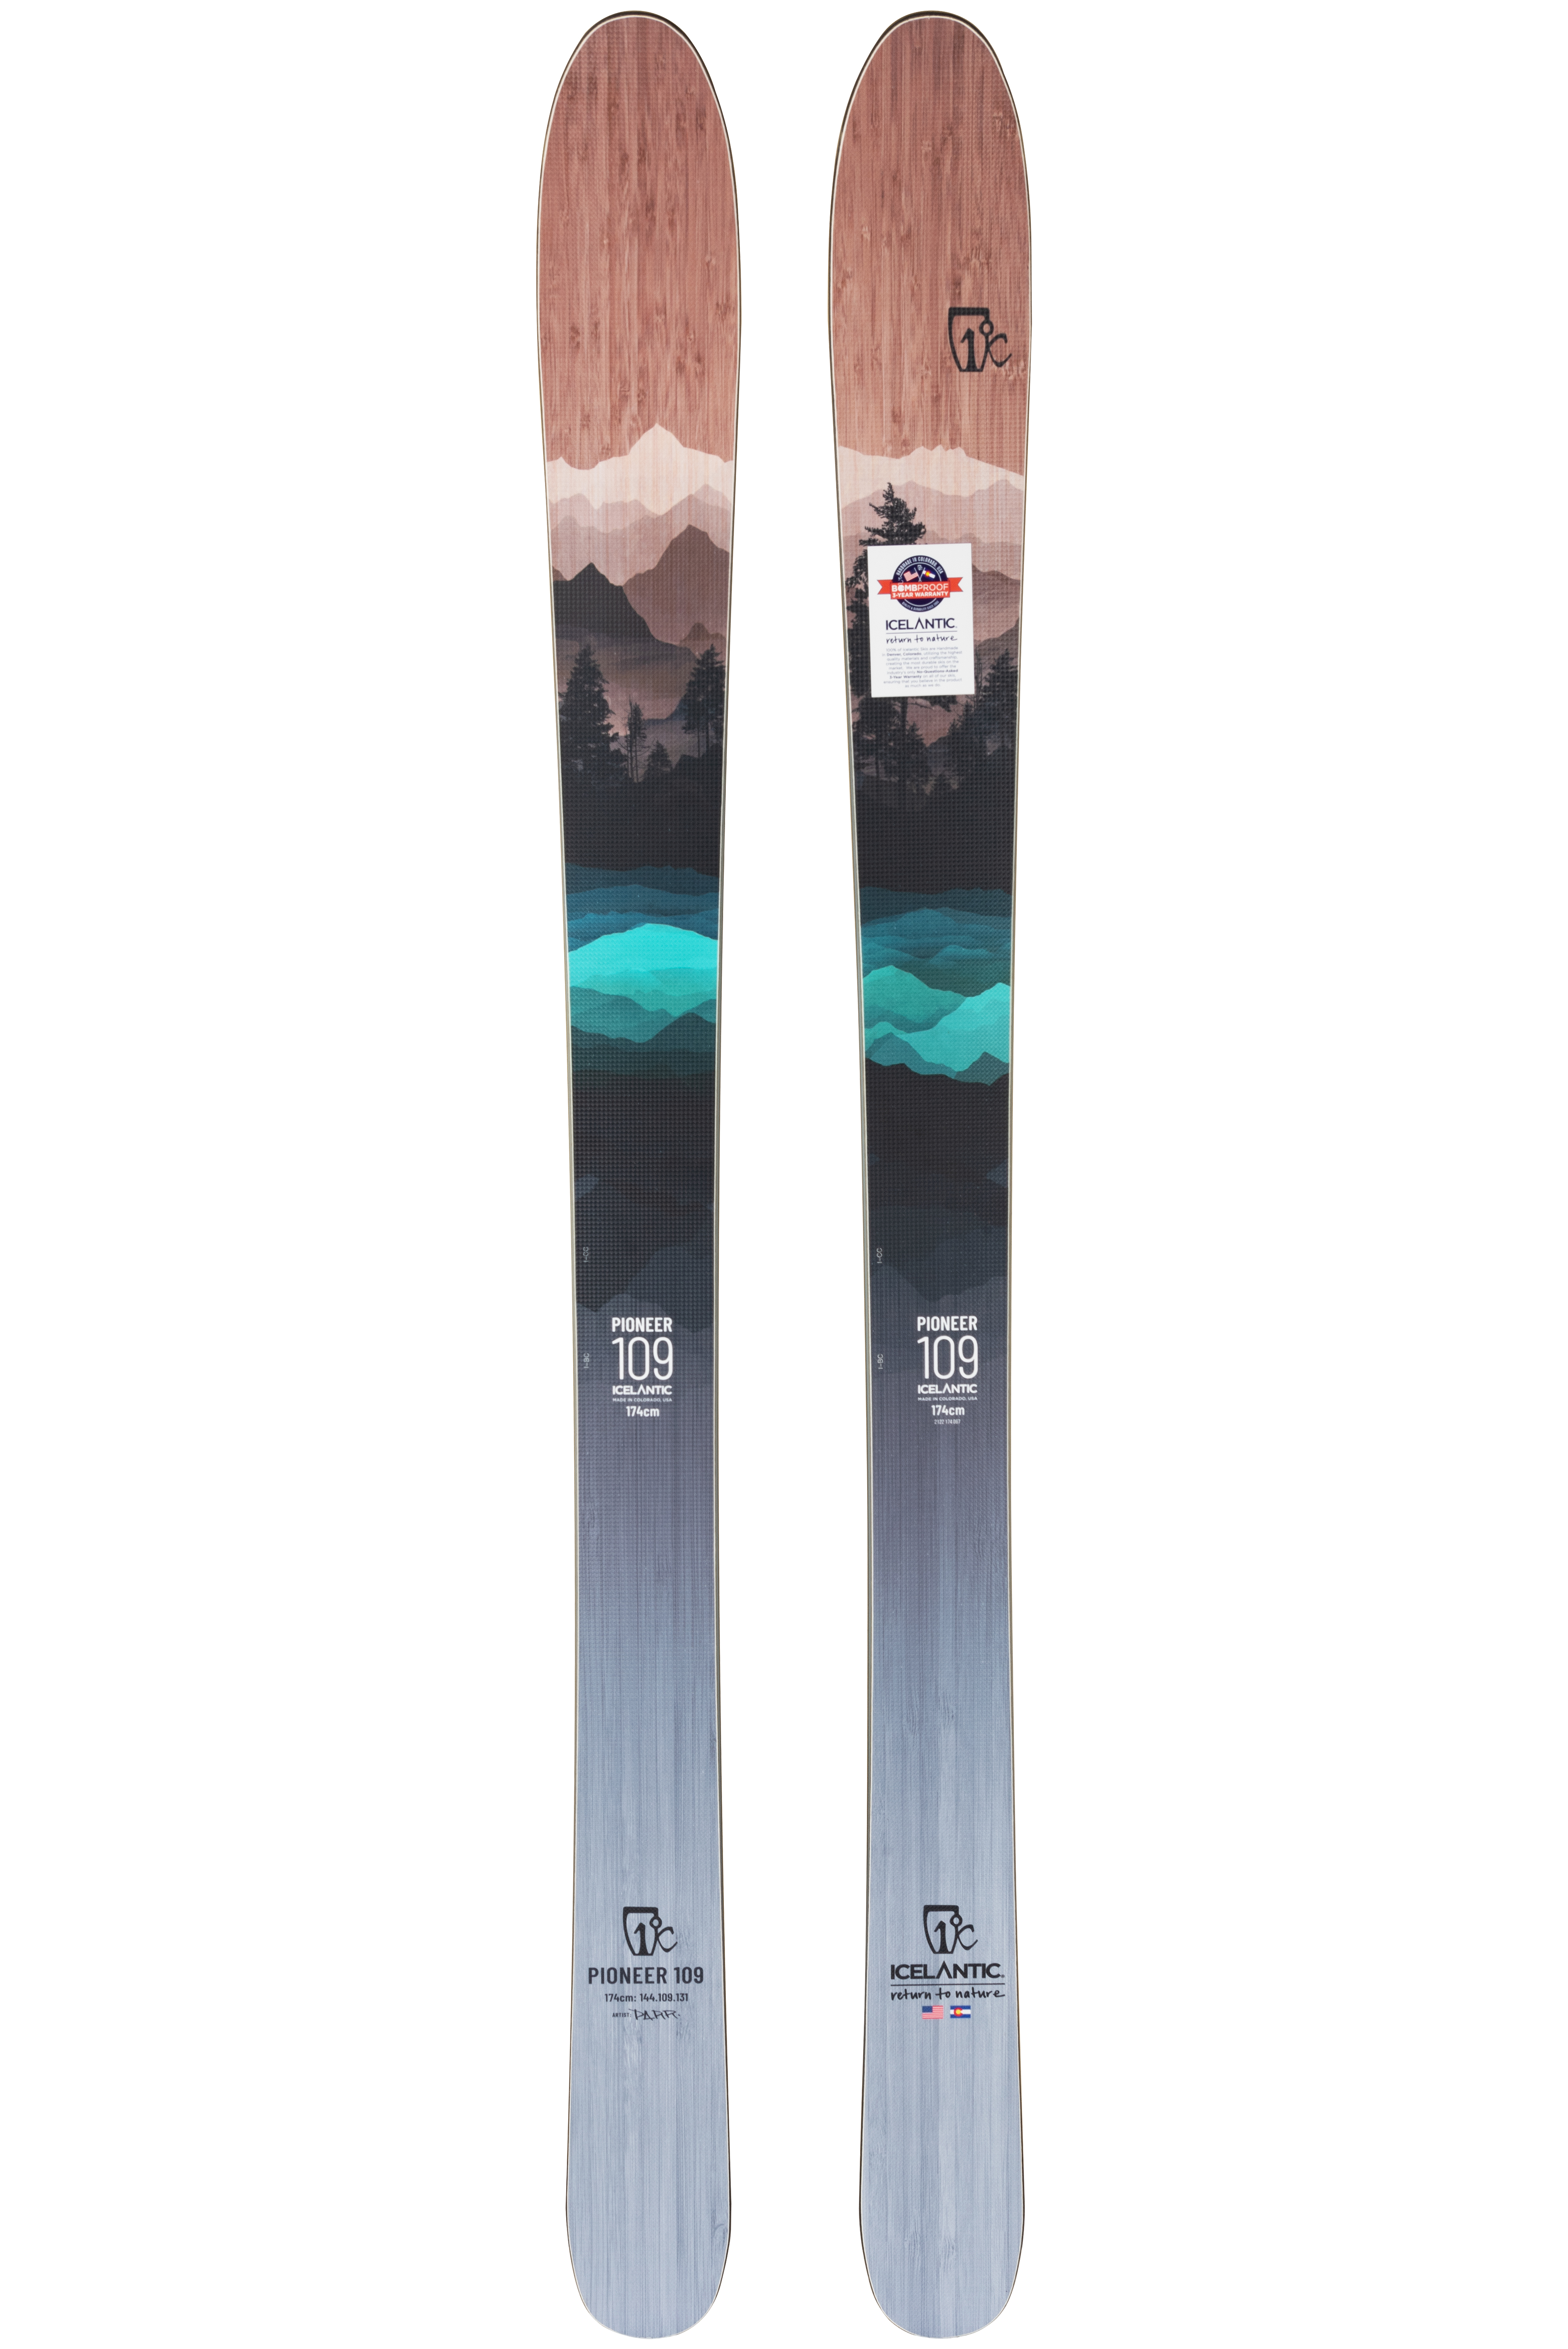 Купить универсальные лыжи Icelantic Pioneer 109 2021/2022 182cm в Киеве